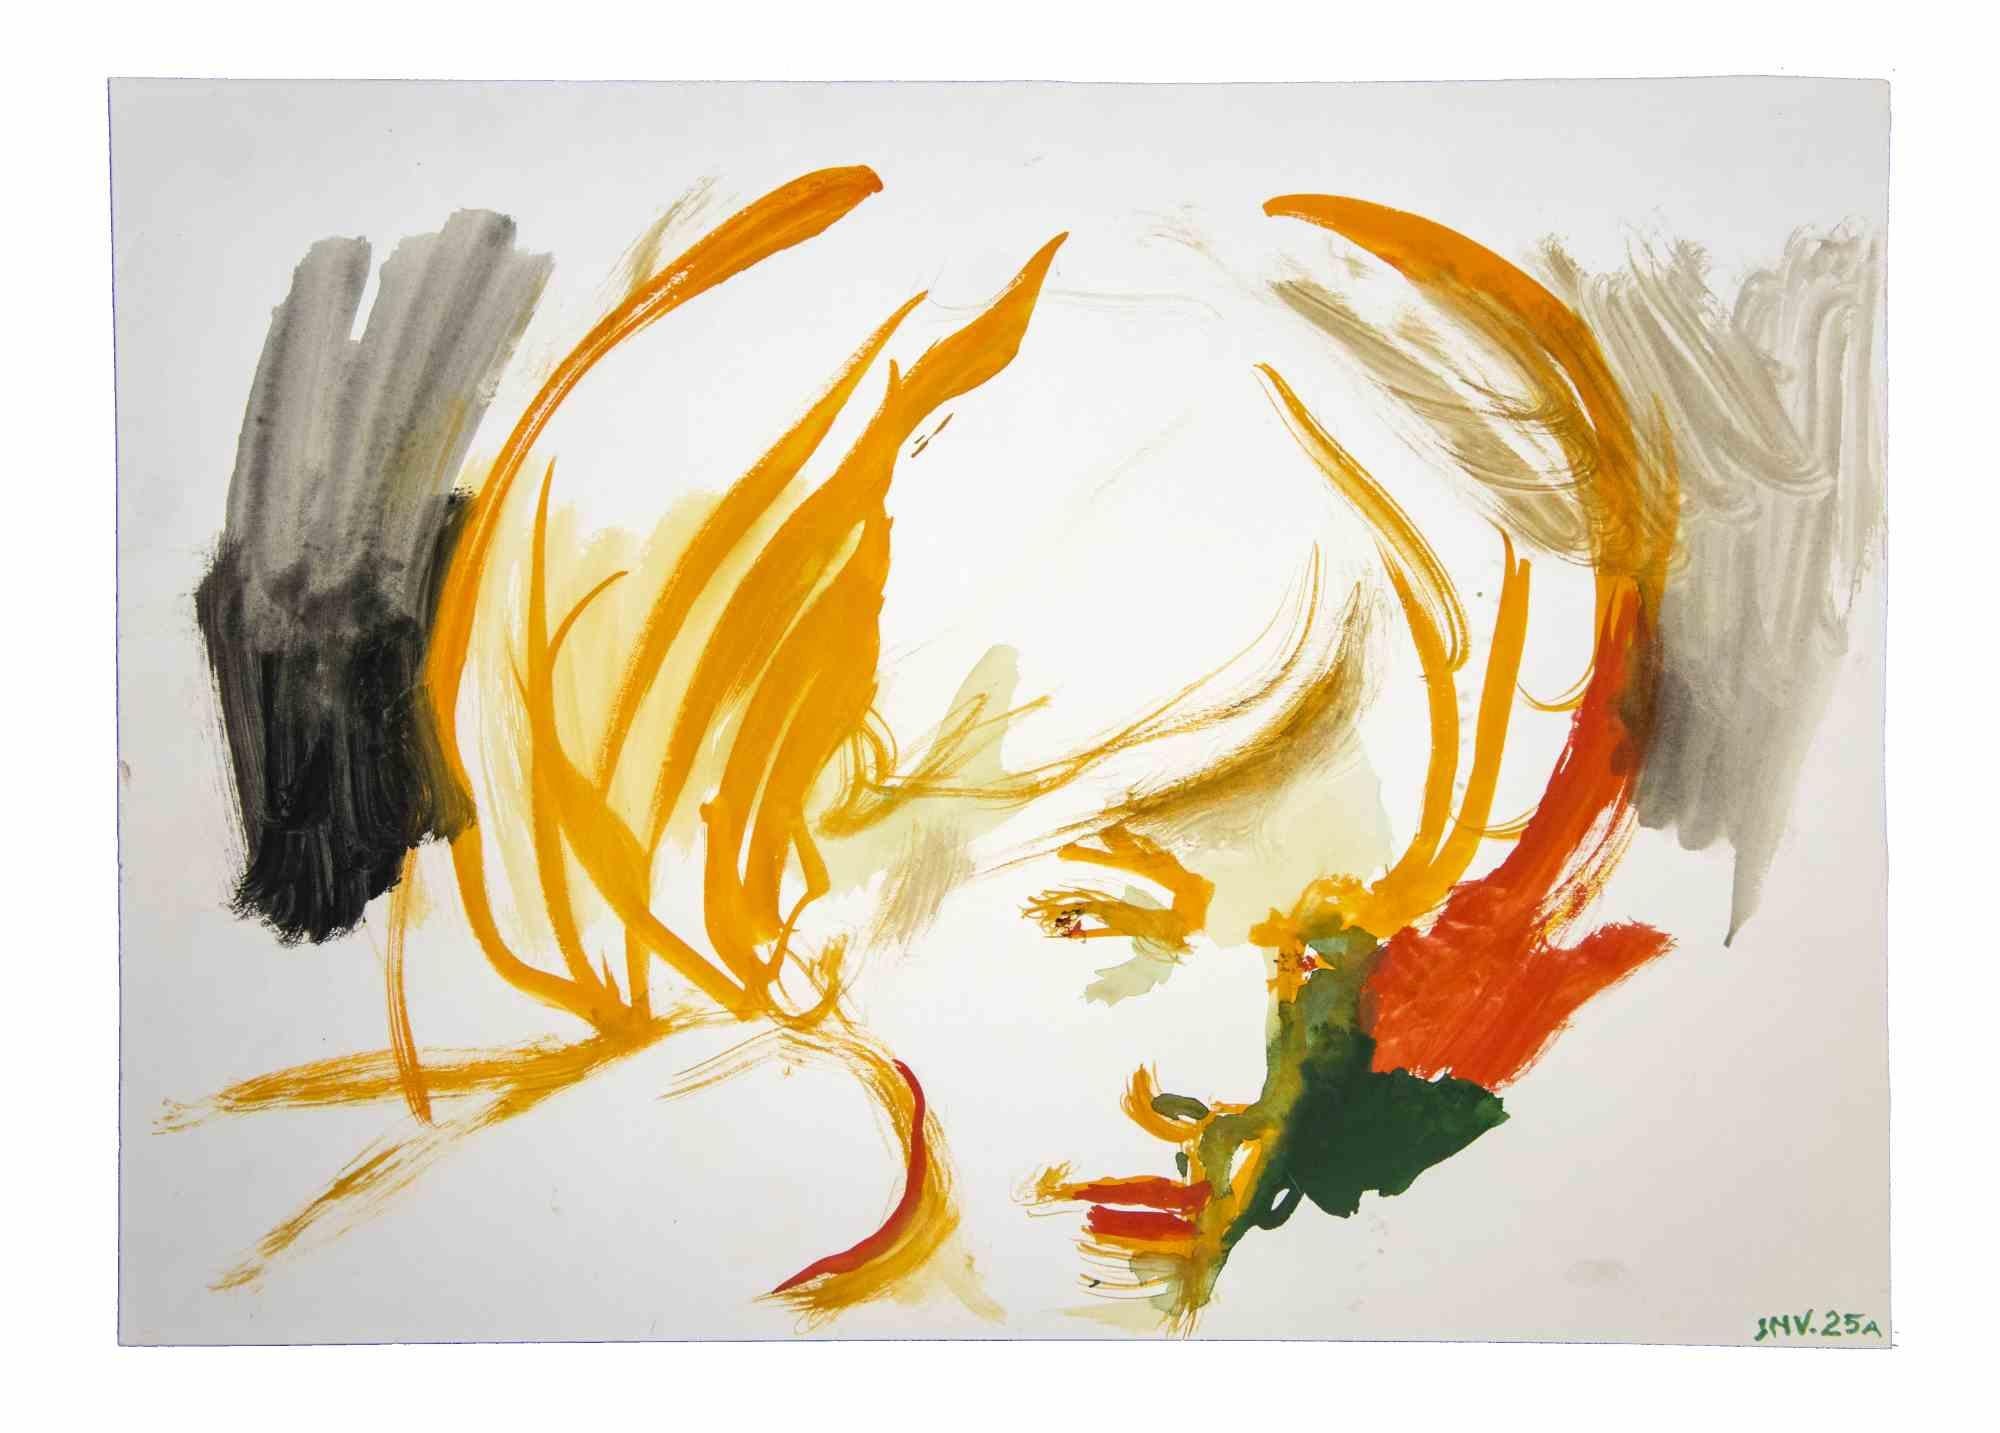 Female Portrait ist ein Original-Kunstwerk, das in den 1970er Jahren von dem italienischen zeitgenössischen Künstler  Leo Guida  (1992 - 2017).

Originalzeichnungen in Aquarell auf Papier.

Guter Zustand, aber gealtert.

Das Kunstwerk wird durch